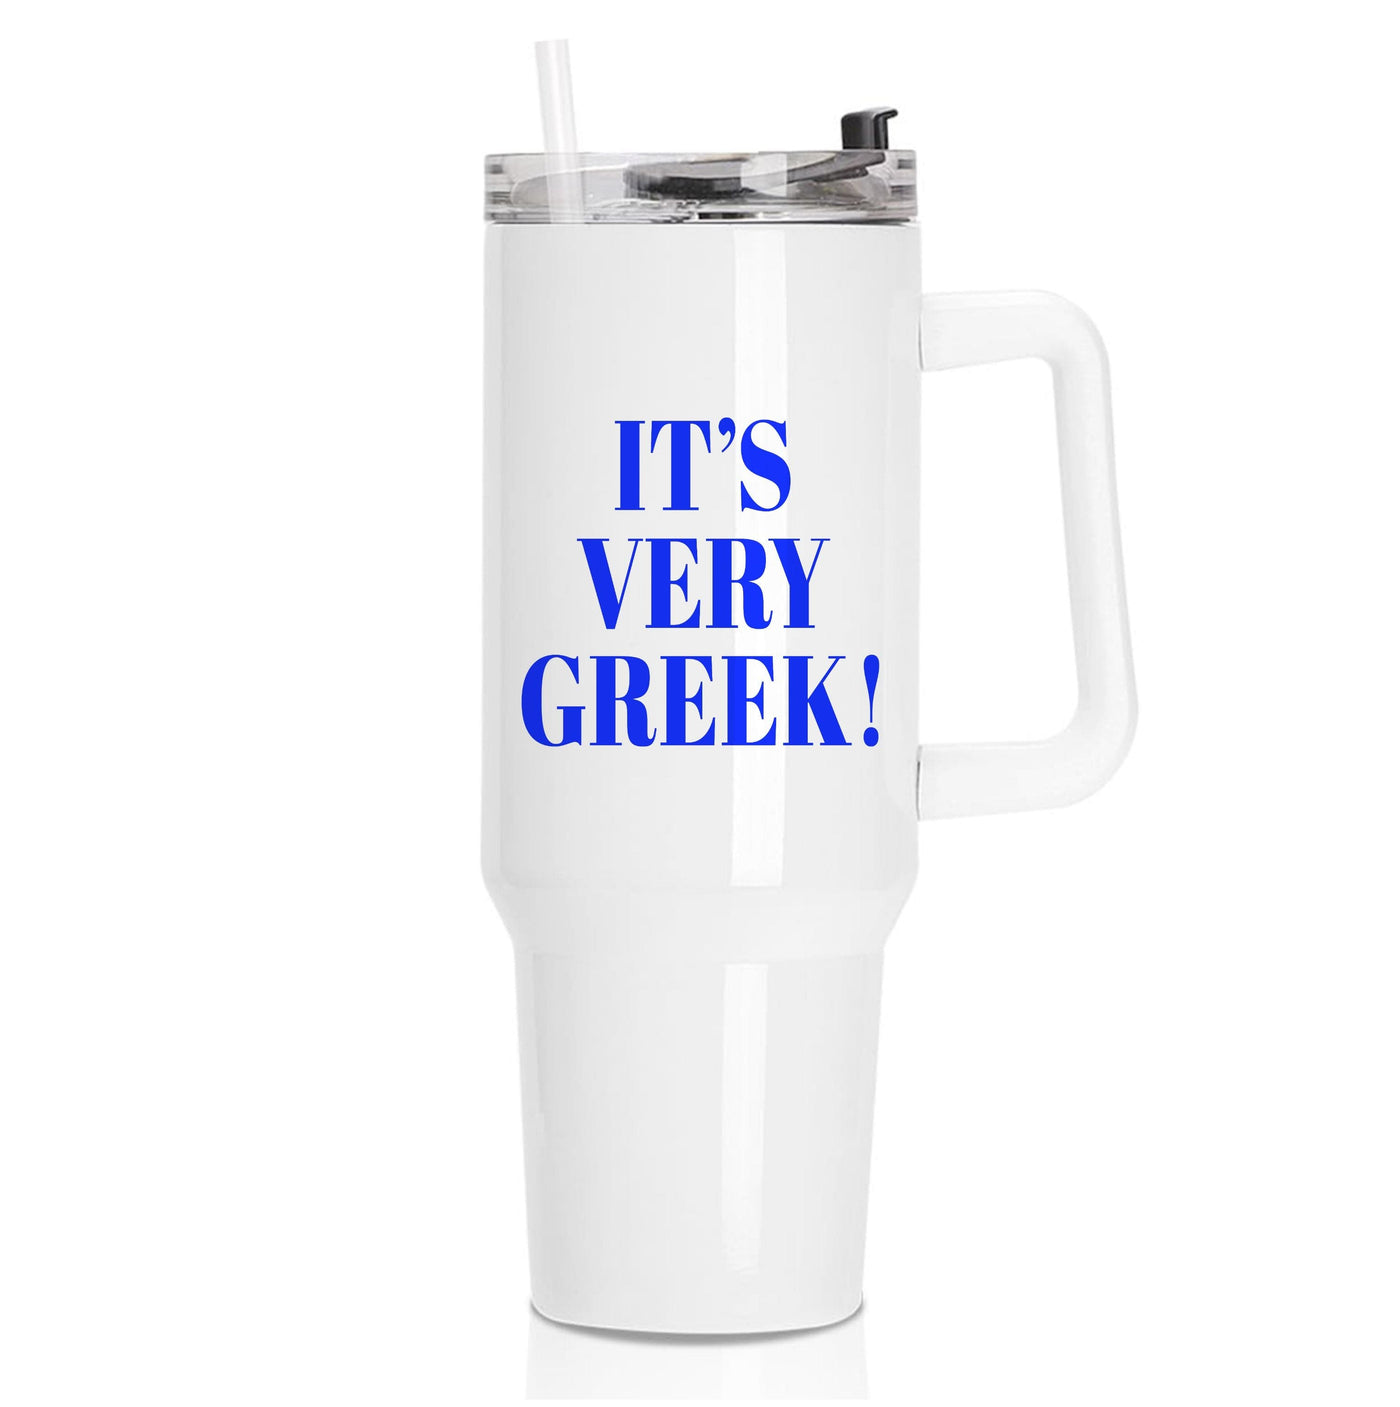 It's Very Greek! - Mamma Mia Tumbler